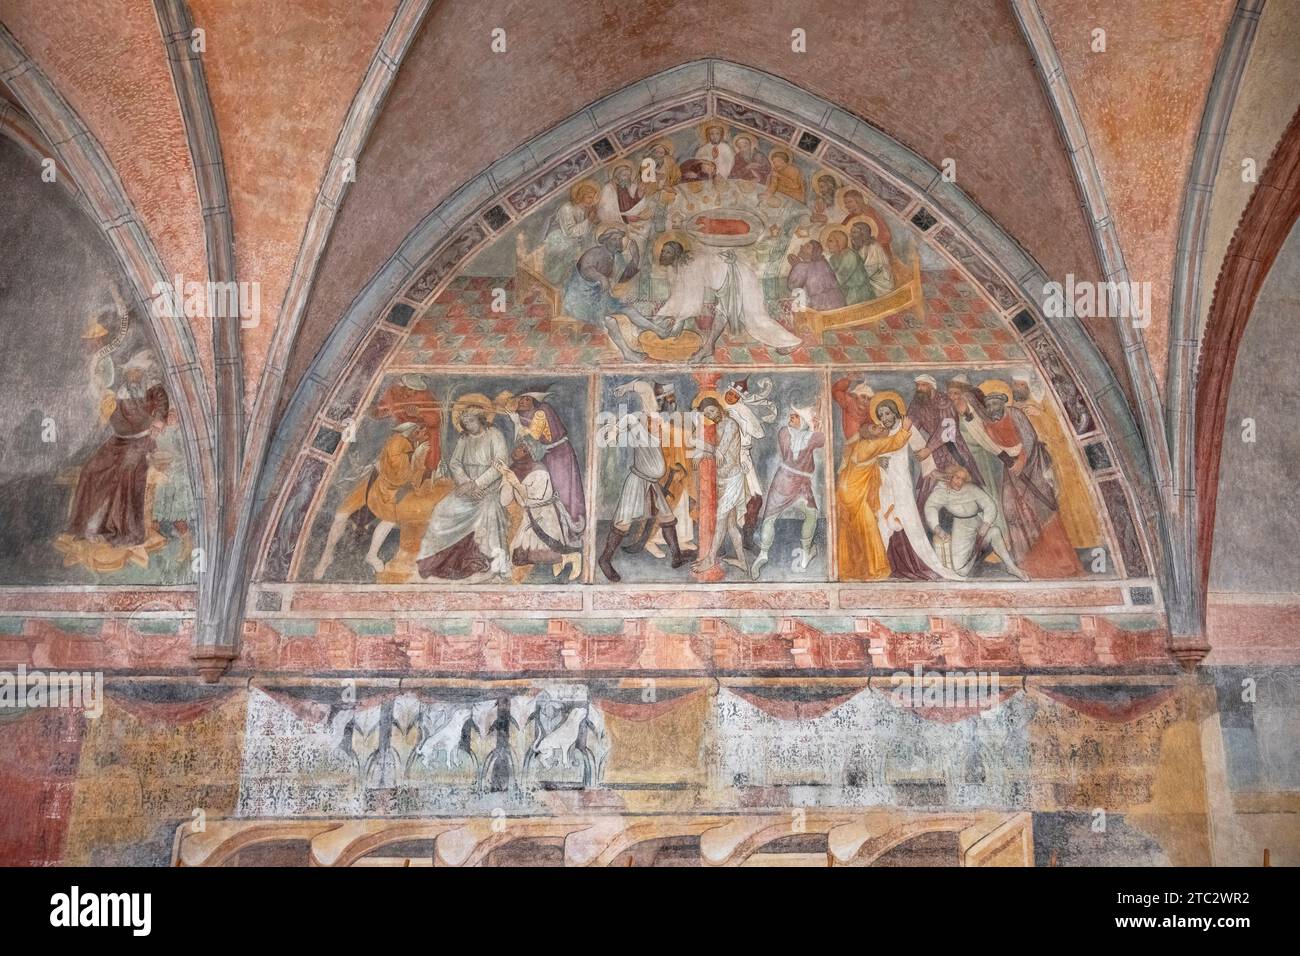 Germania, Baviera, Augusta, Chiesa di Sant'Anna, Goldschmiedekapelle (Cappella degli Orafi) con affreschi del XV secolo. Foto Stock